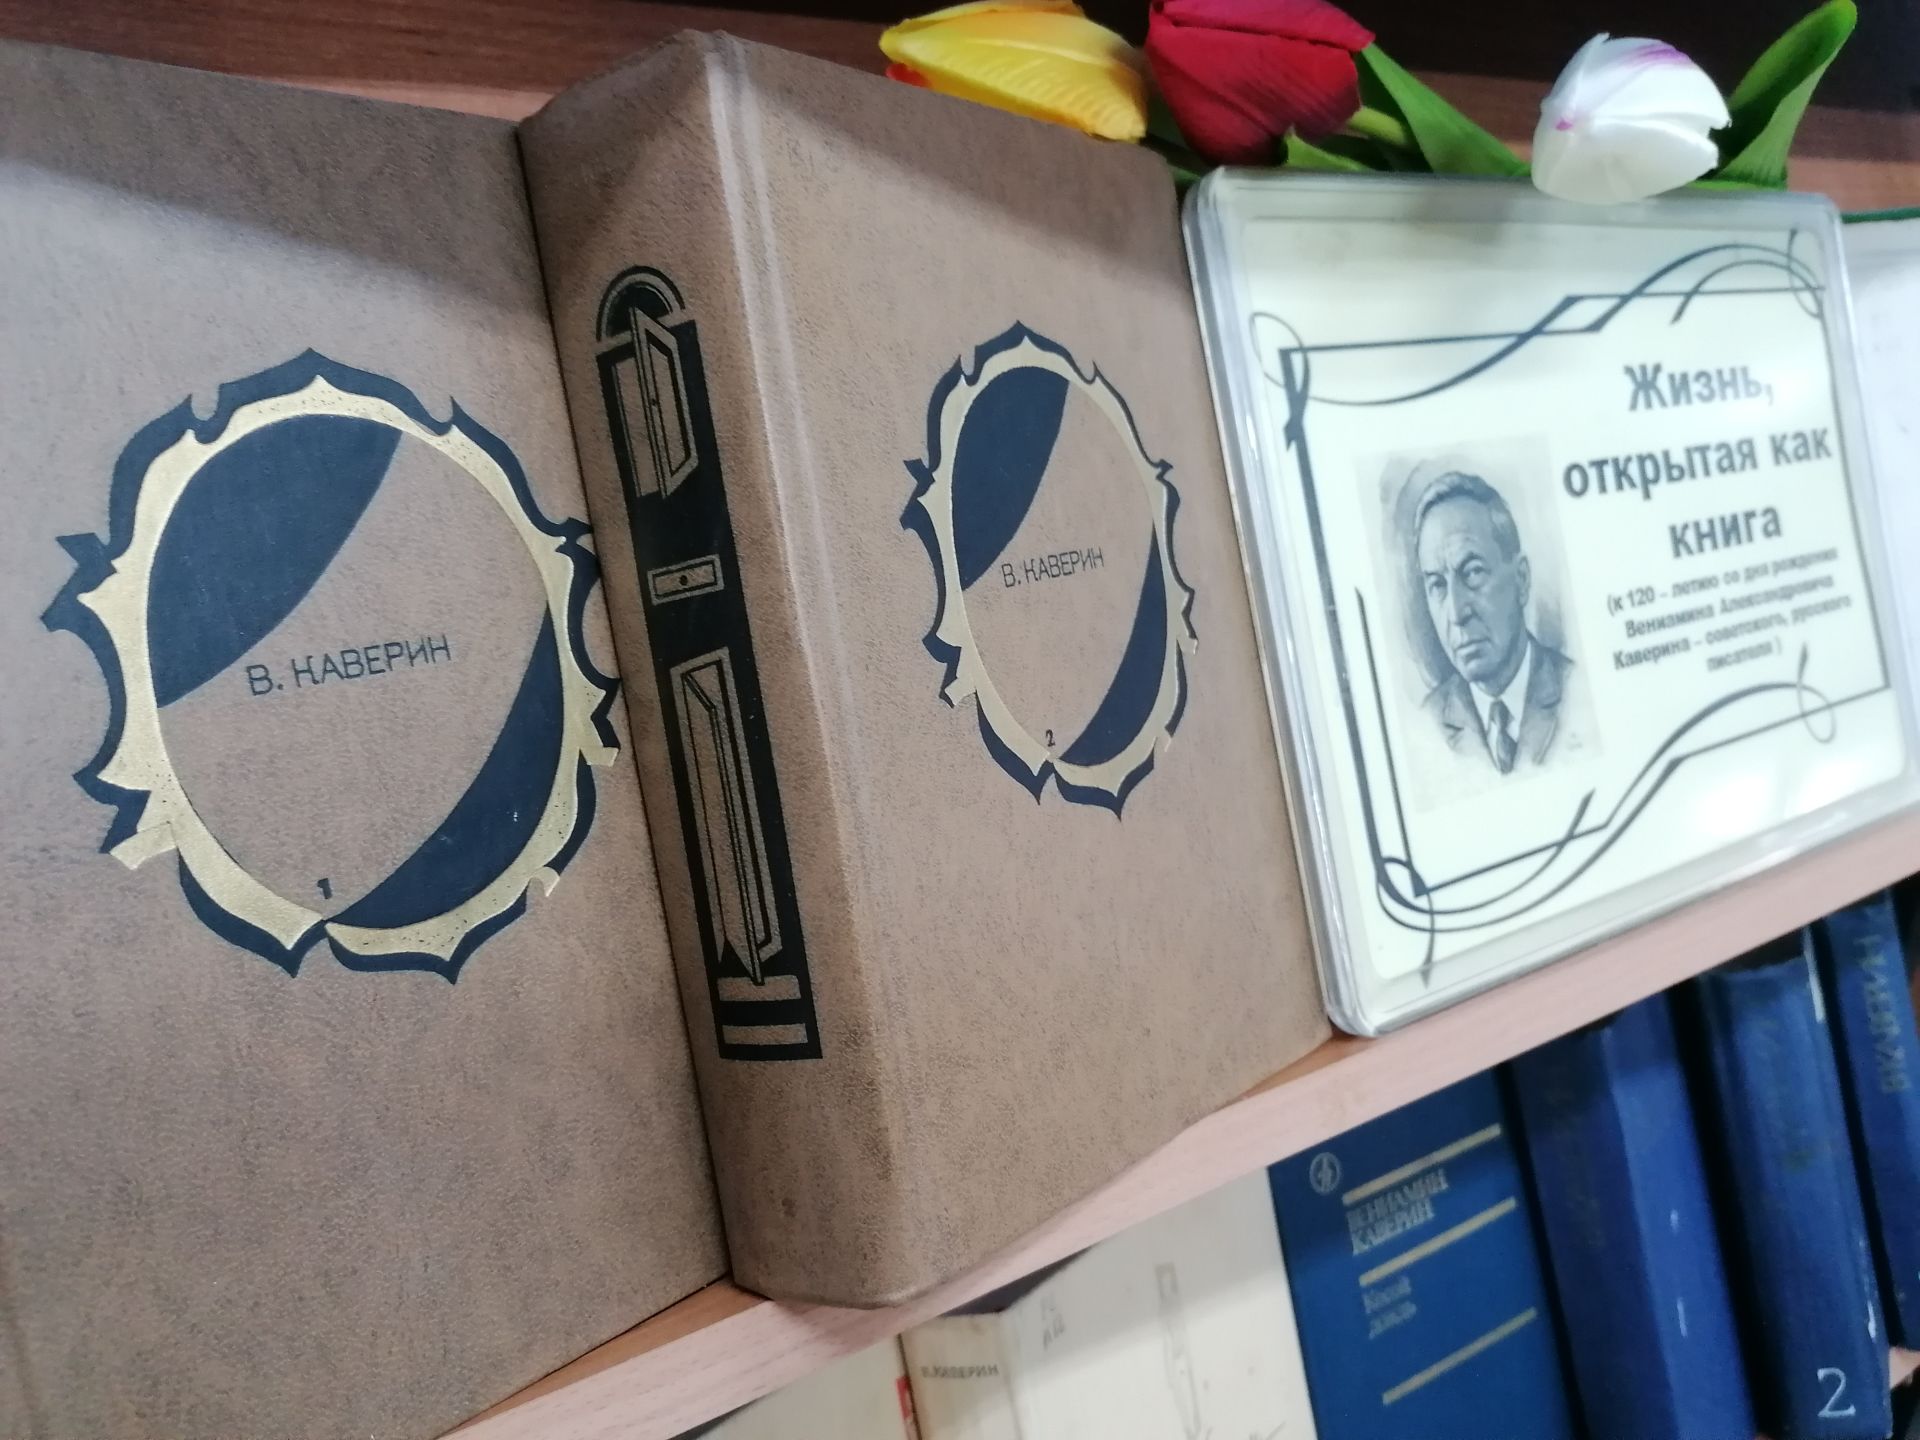 Новая книжная выставка к 120-летию Каверина открылась в библиотеке